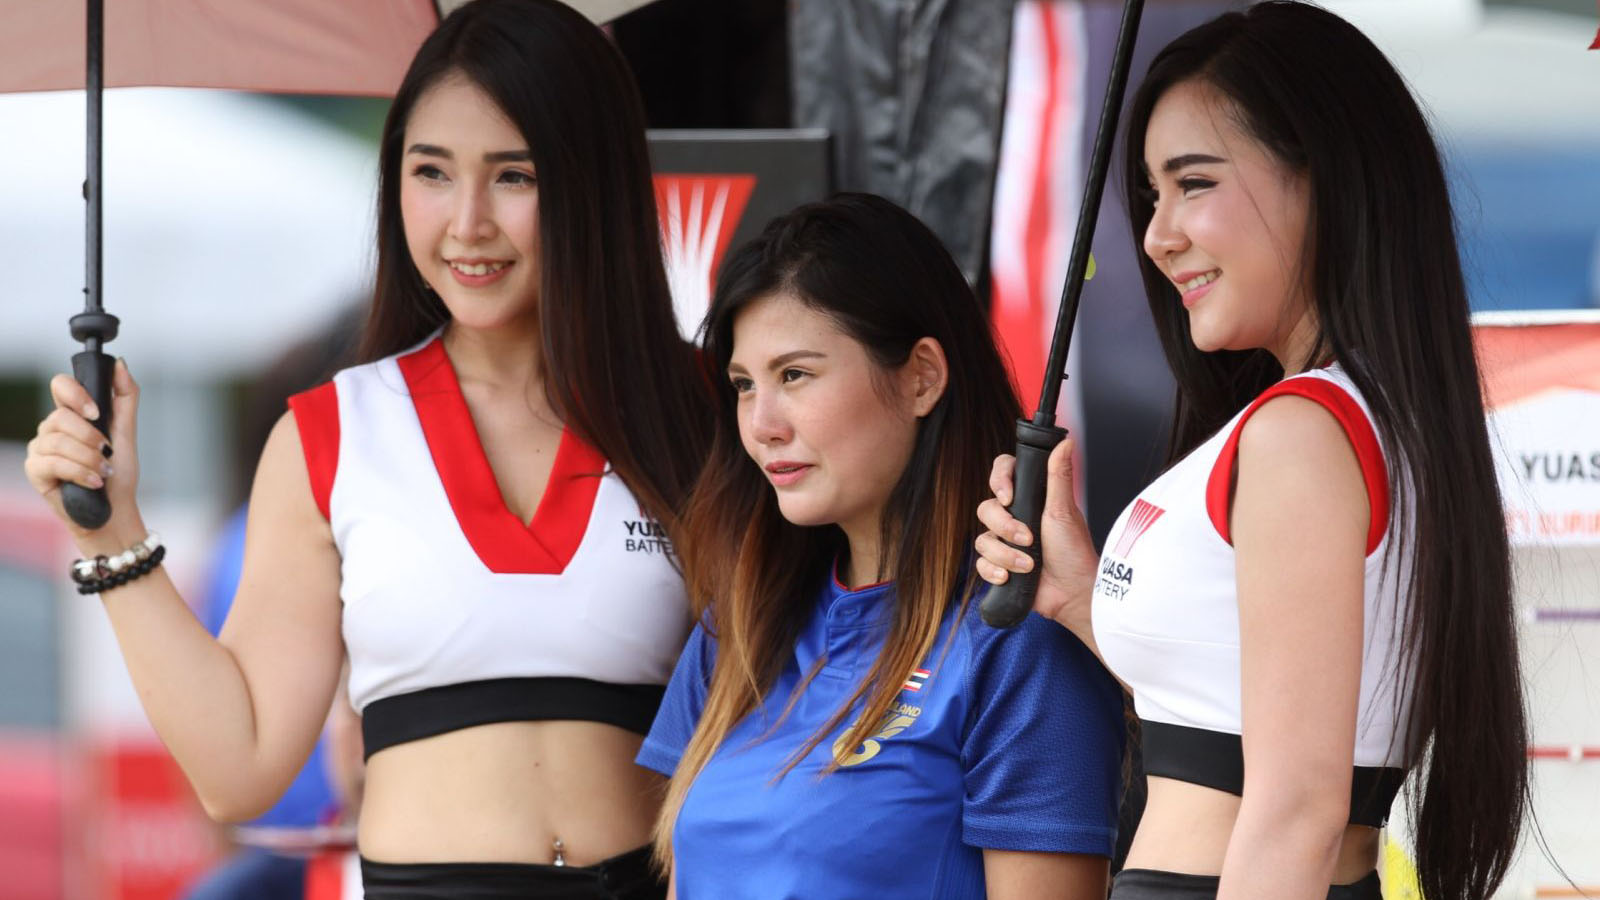 trực tiếp bóng đá, Thái Lan đấu với Việt Nam, truc tiep bong da hôm nay, Việt Nam vs Thailand 2019, VTV6, VTV5, VTC1, VTC3, xem bóng đá trực tuyến, Viet Nam Thai Lan